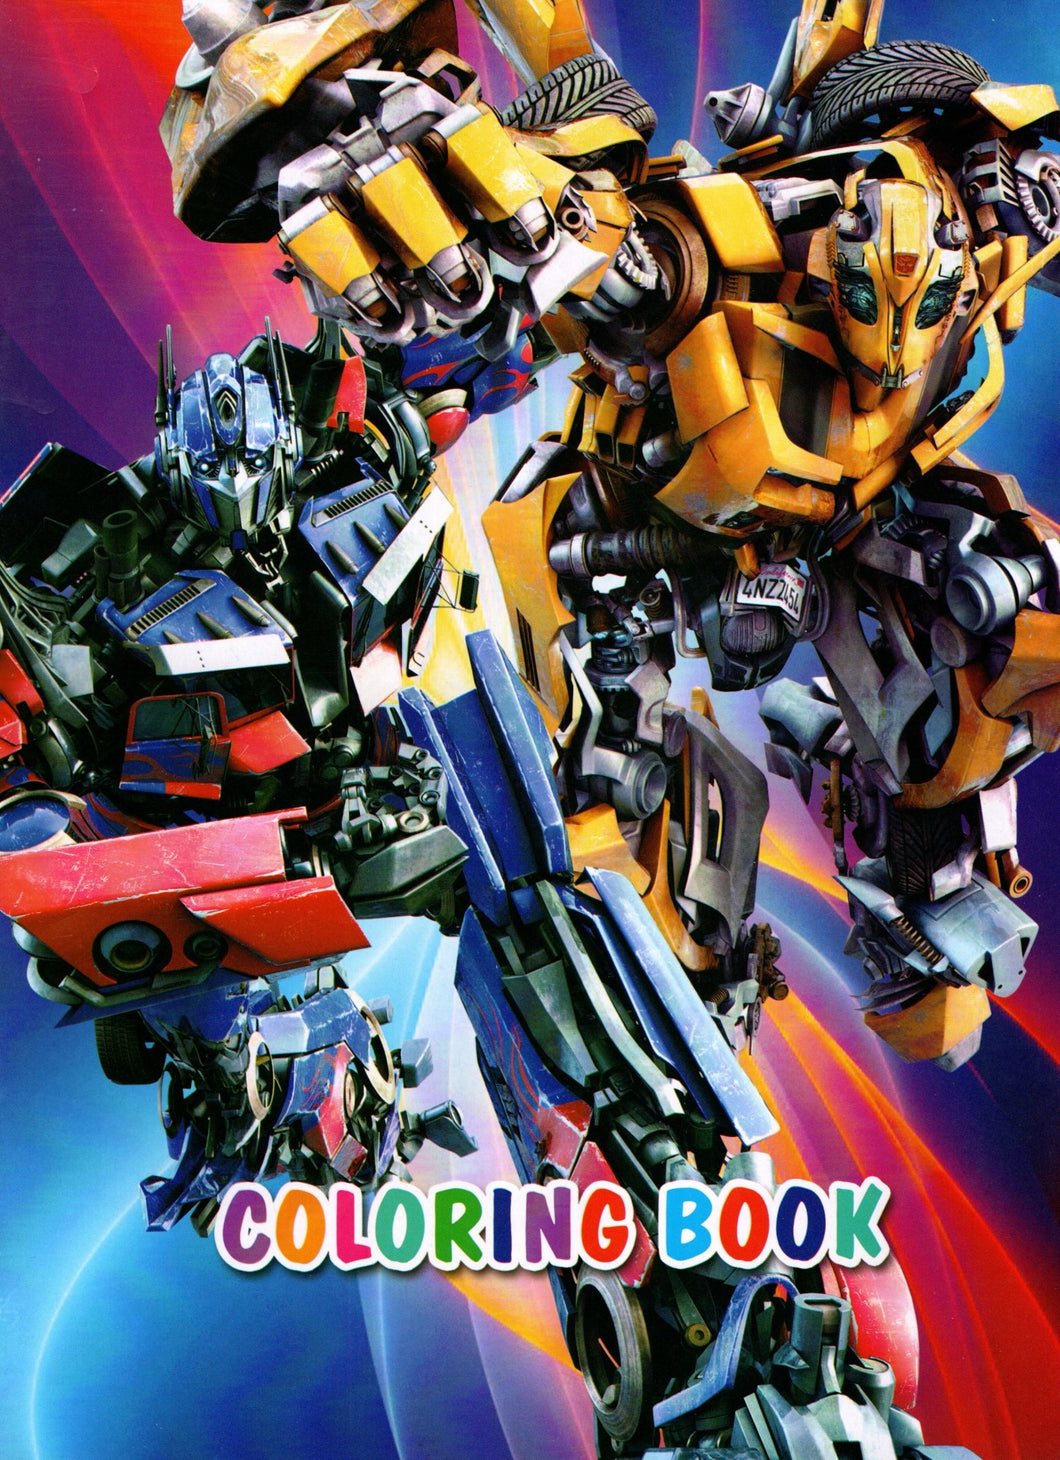 Carte de Colorat Copii cu Supereroi Transformers si Stickers